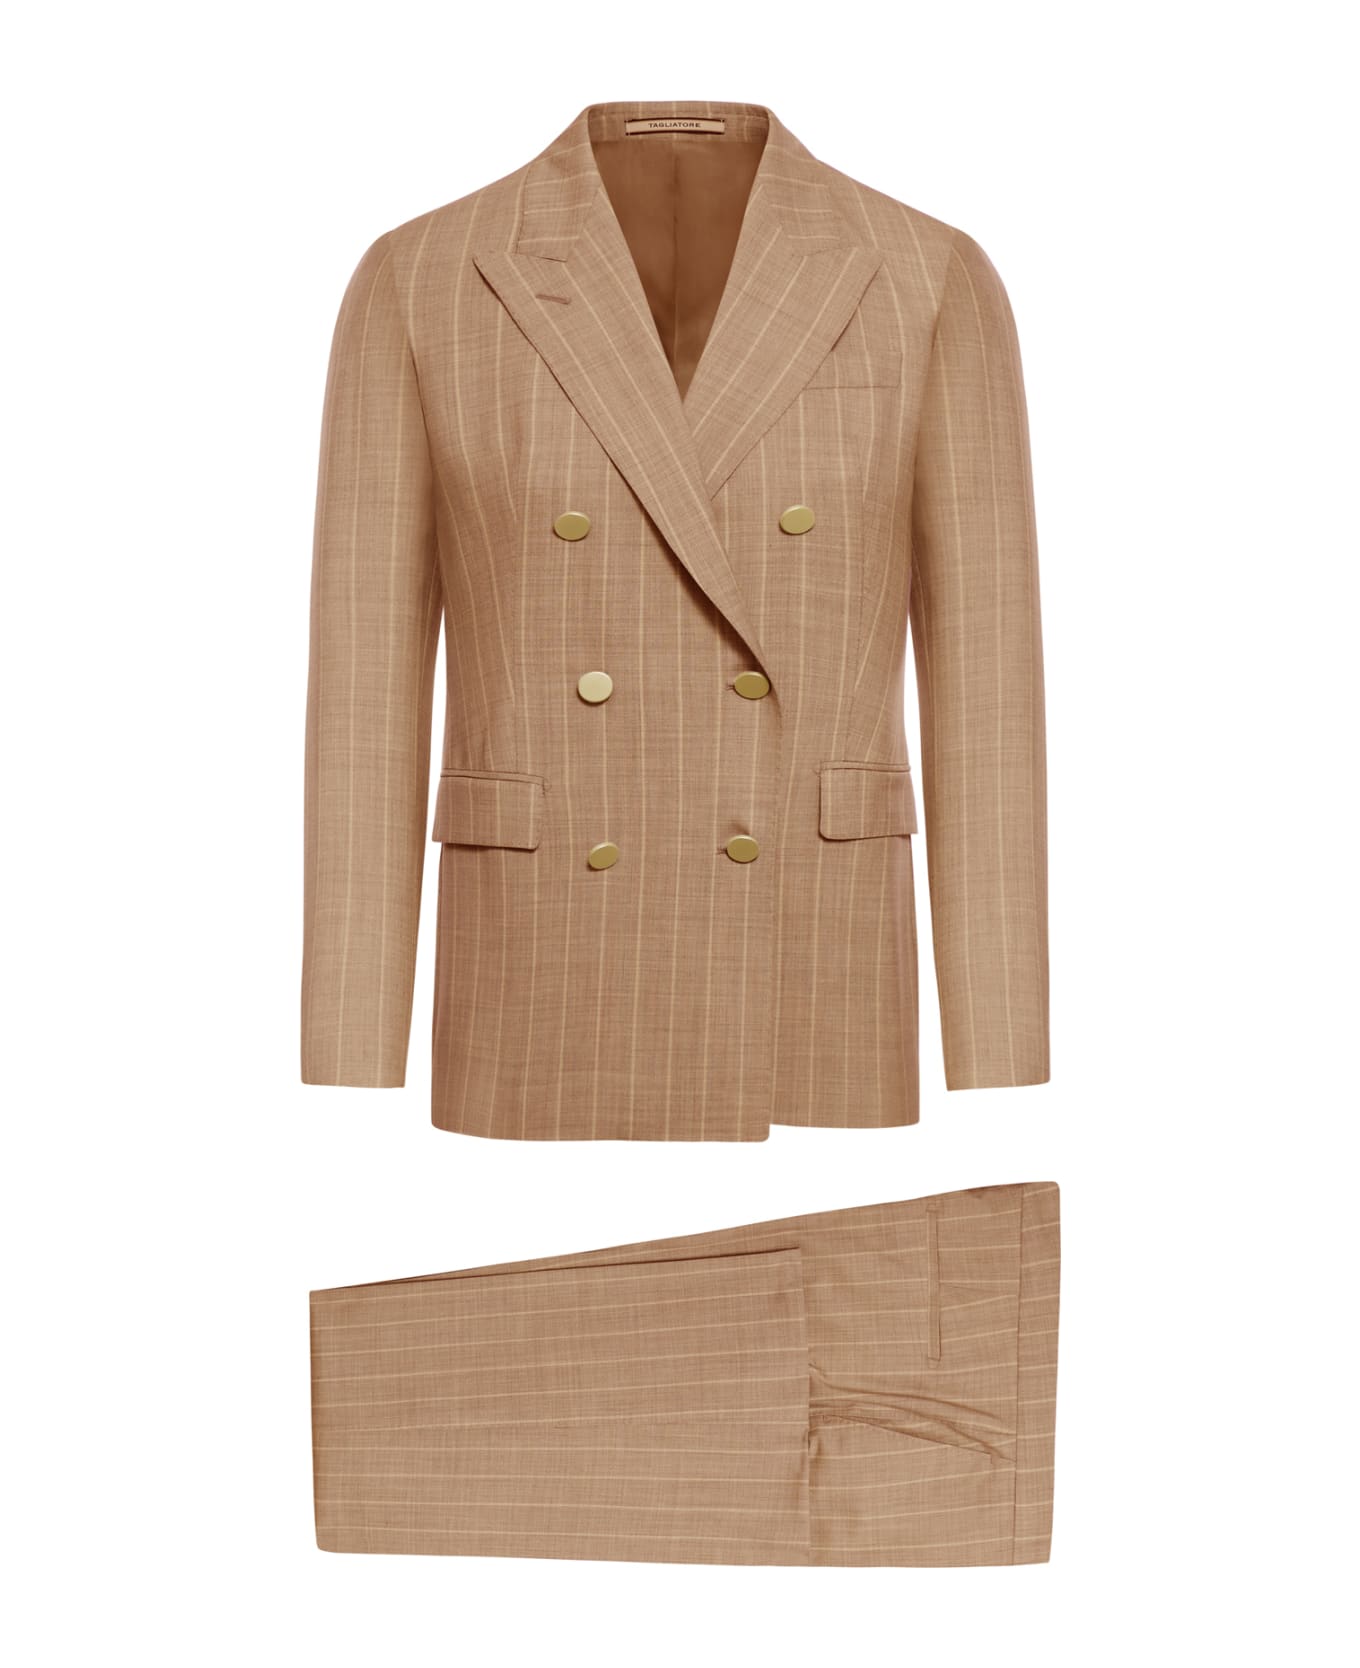 Tagliatore Suit Met150 - Brown